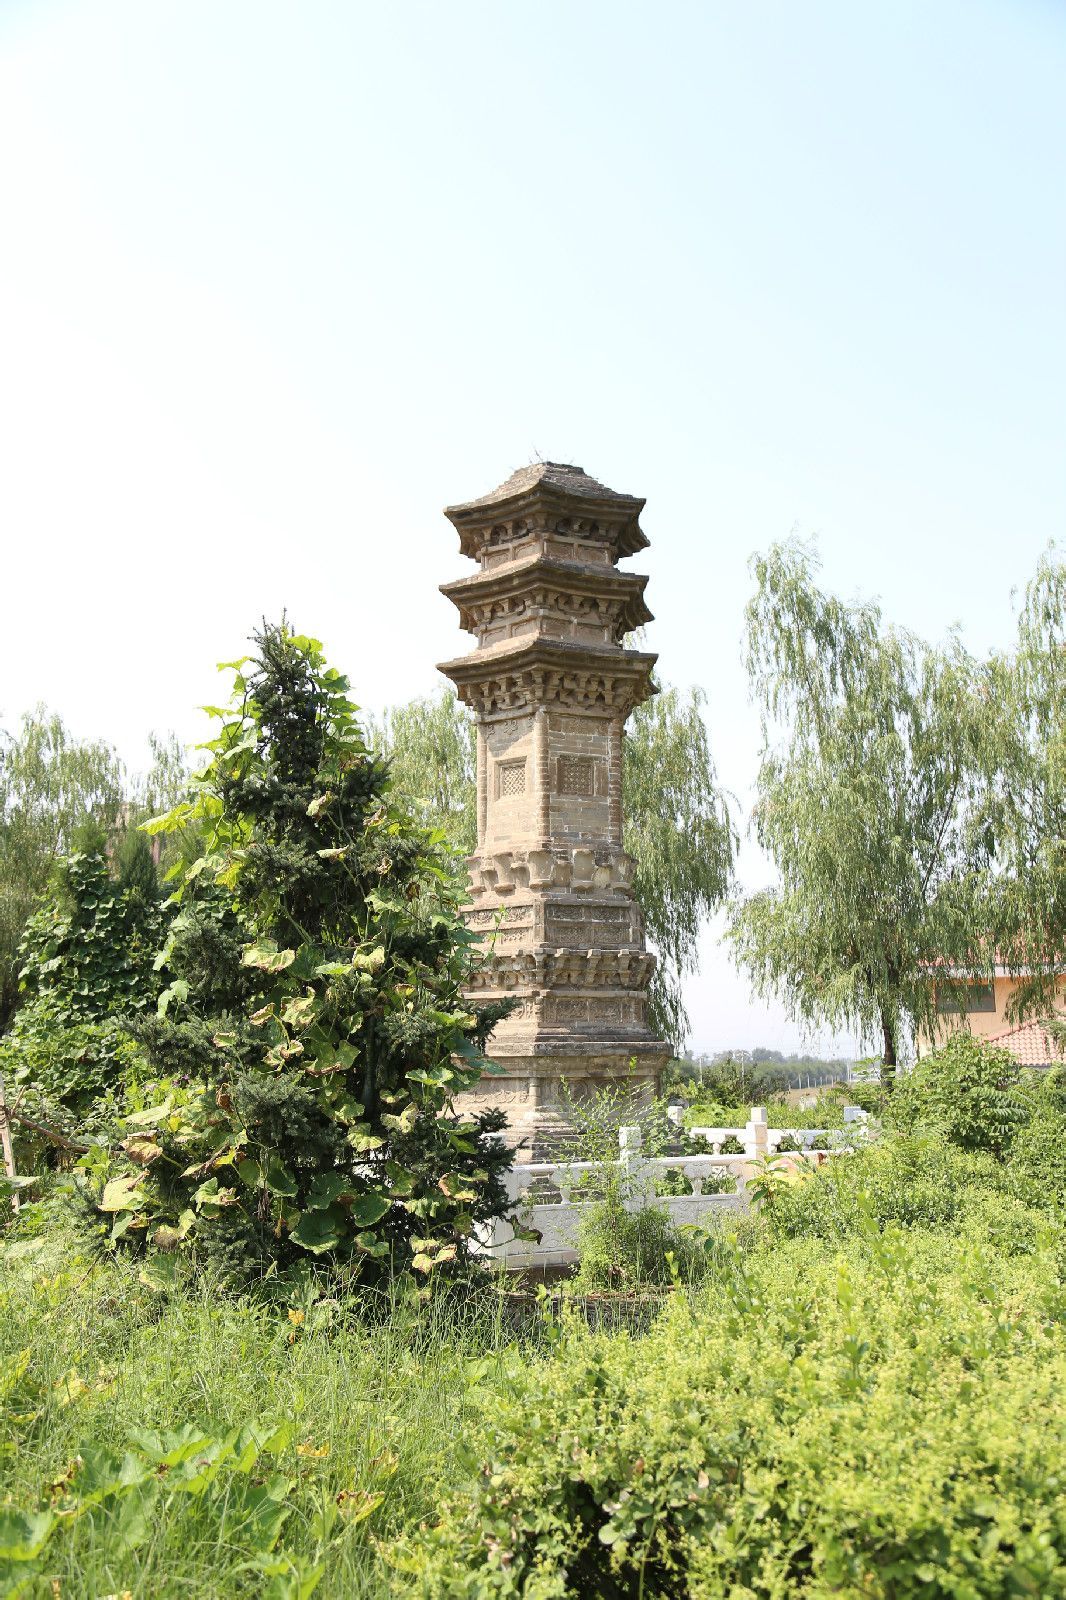 于庄塔(其他文化相关)于庄塔位于北京市房山区窦店镇于庄村西的太行山